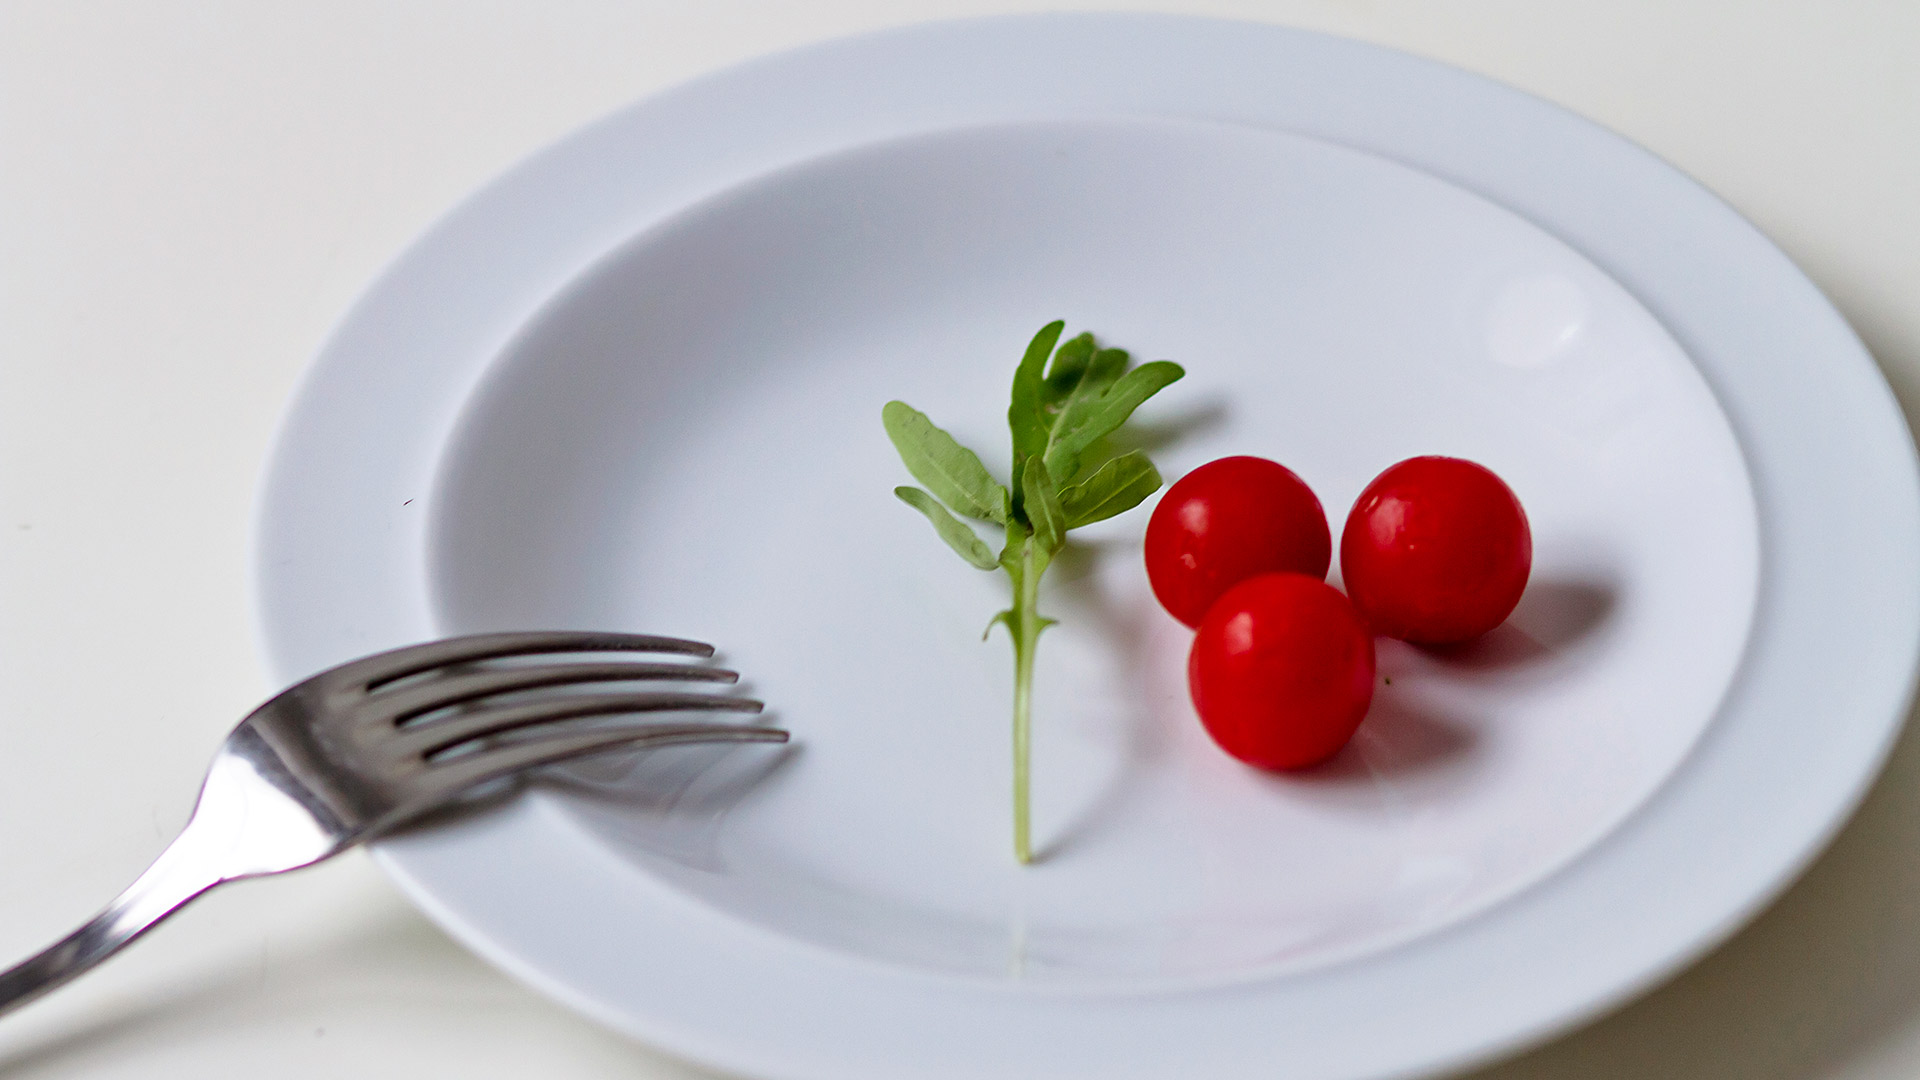 Las dietas que imponen consumir muy pocas calorías y que prohíben grupos de alimentos pueden conducir a la pérdida de peso peso muy rápido a costa del músculo y del agua que hay en el organismo humano